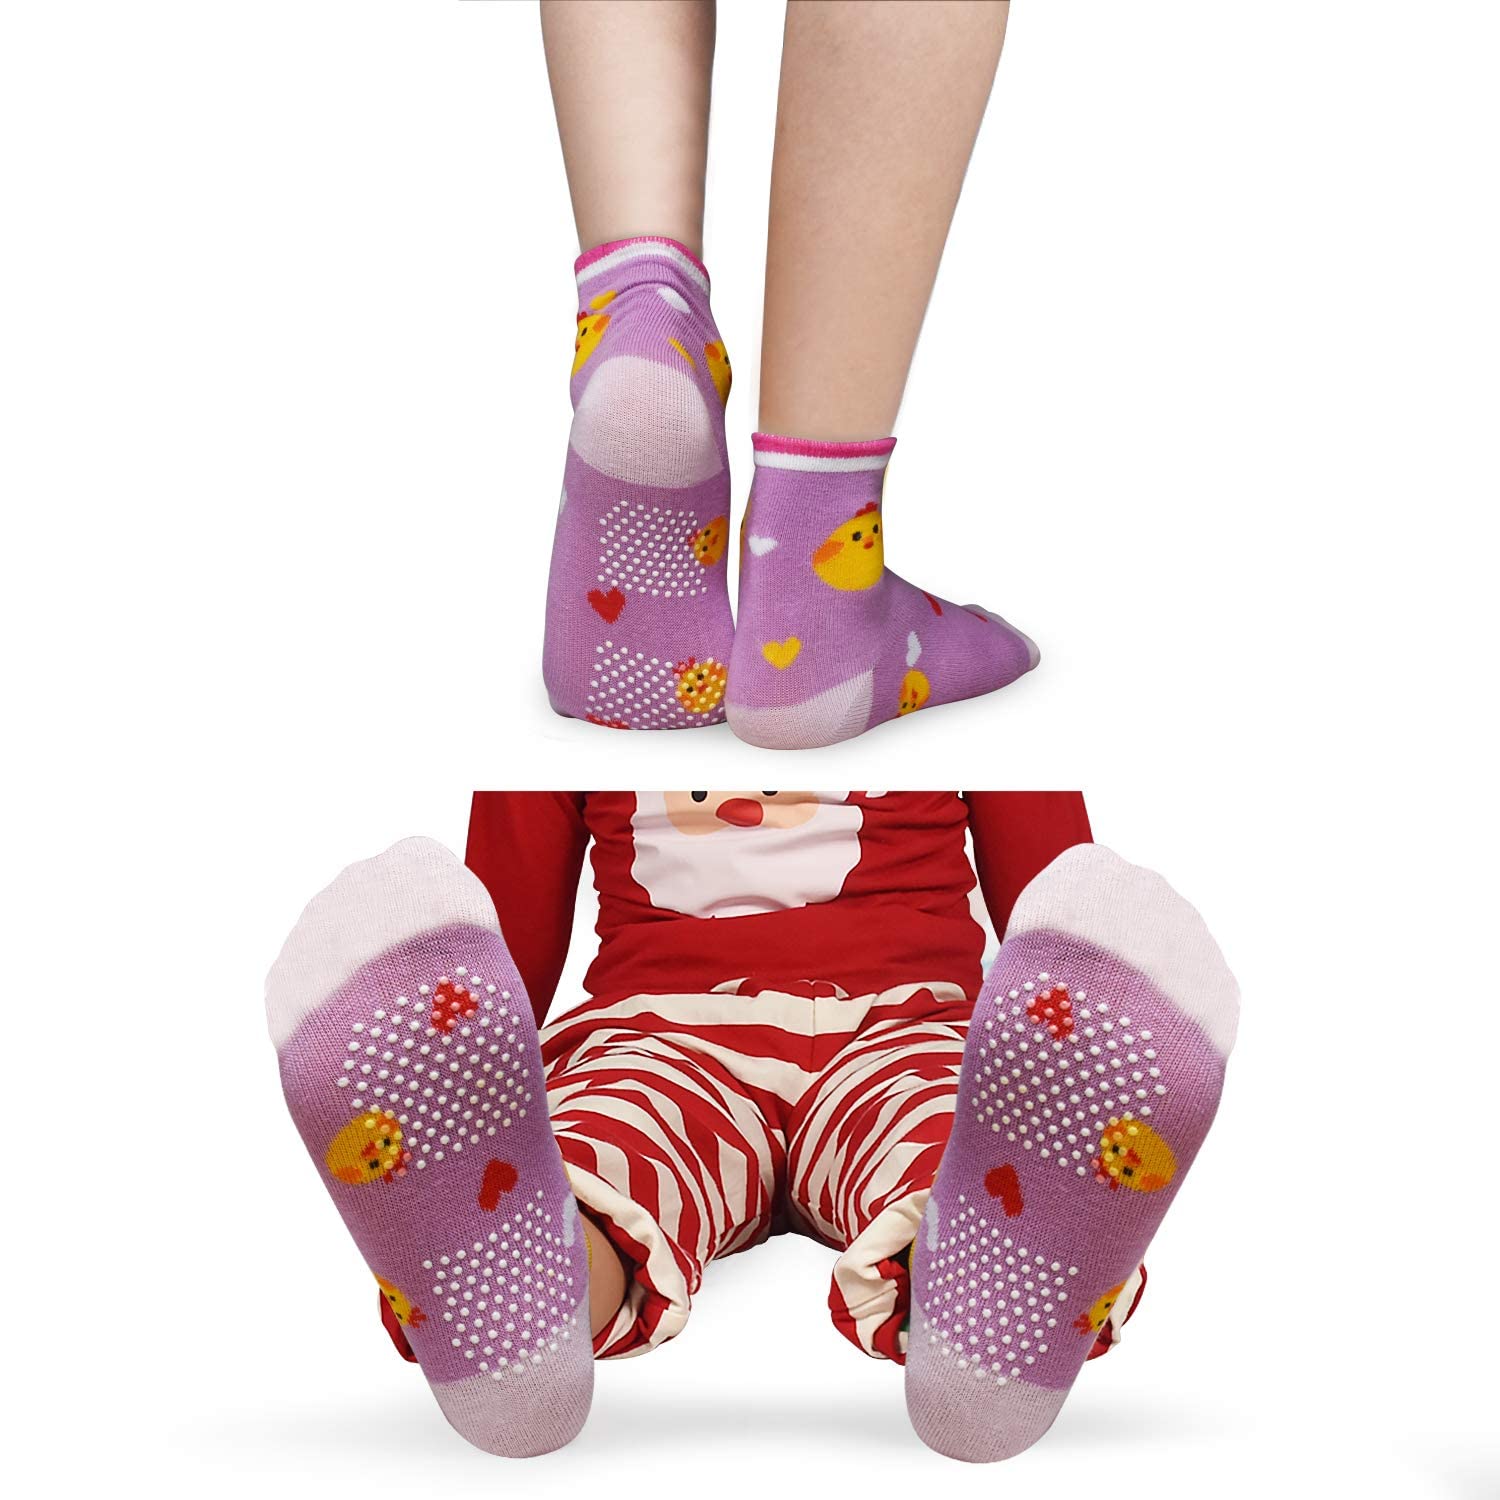 HYCLES Baby Girp Socks 12 Pairs for Boys Girls 1-7 Years Toddler Infant Kids Children Non Skid Anti-slip Socks